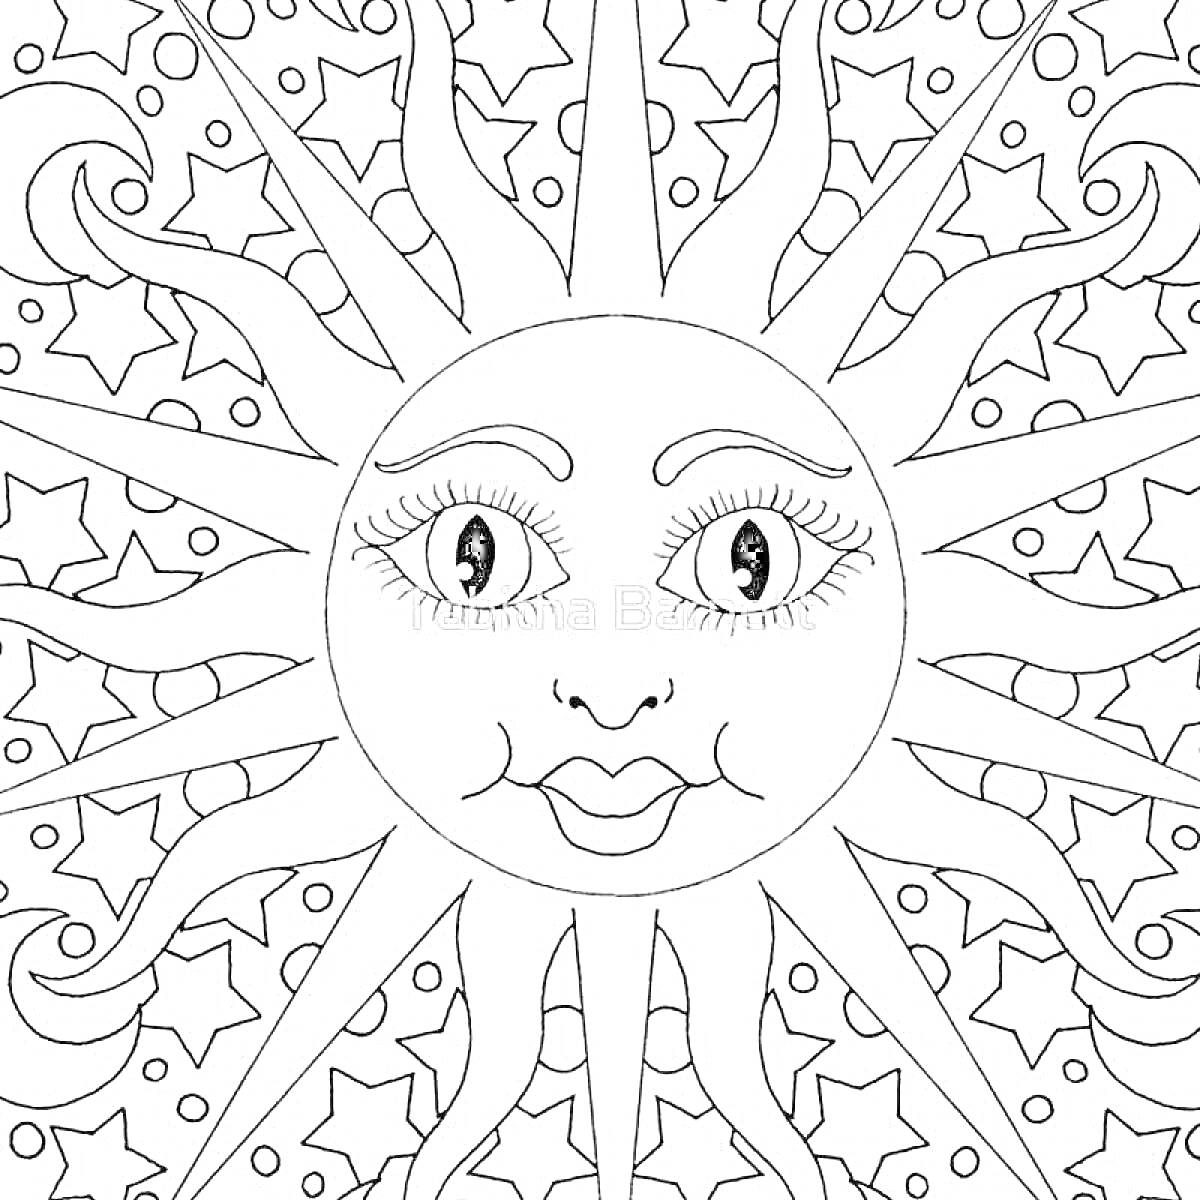 Раскраска Солнце с лицом с фоновой звездно-лунной композицией